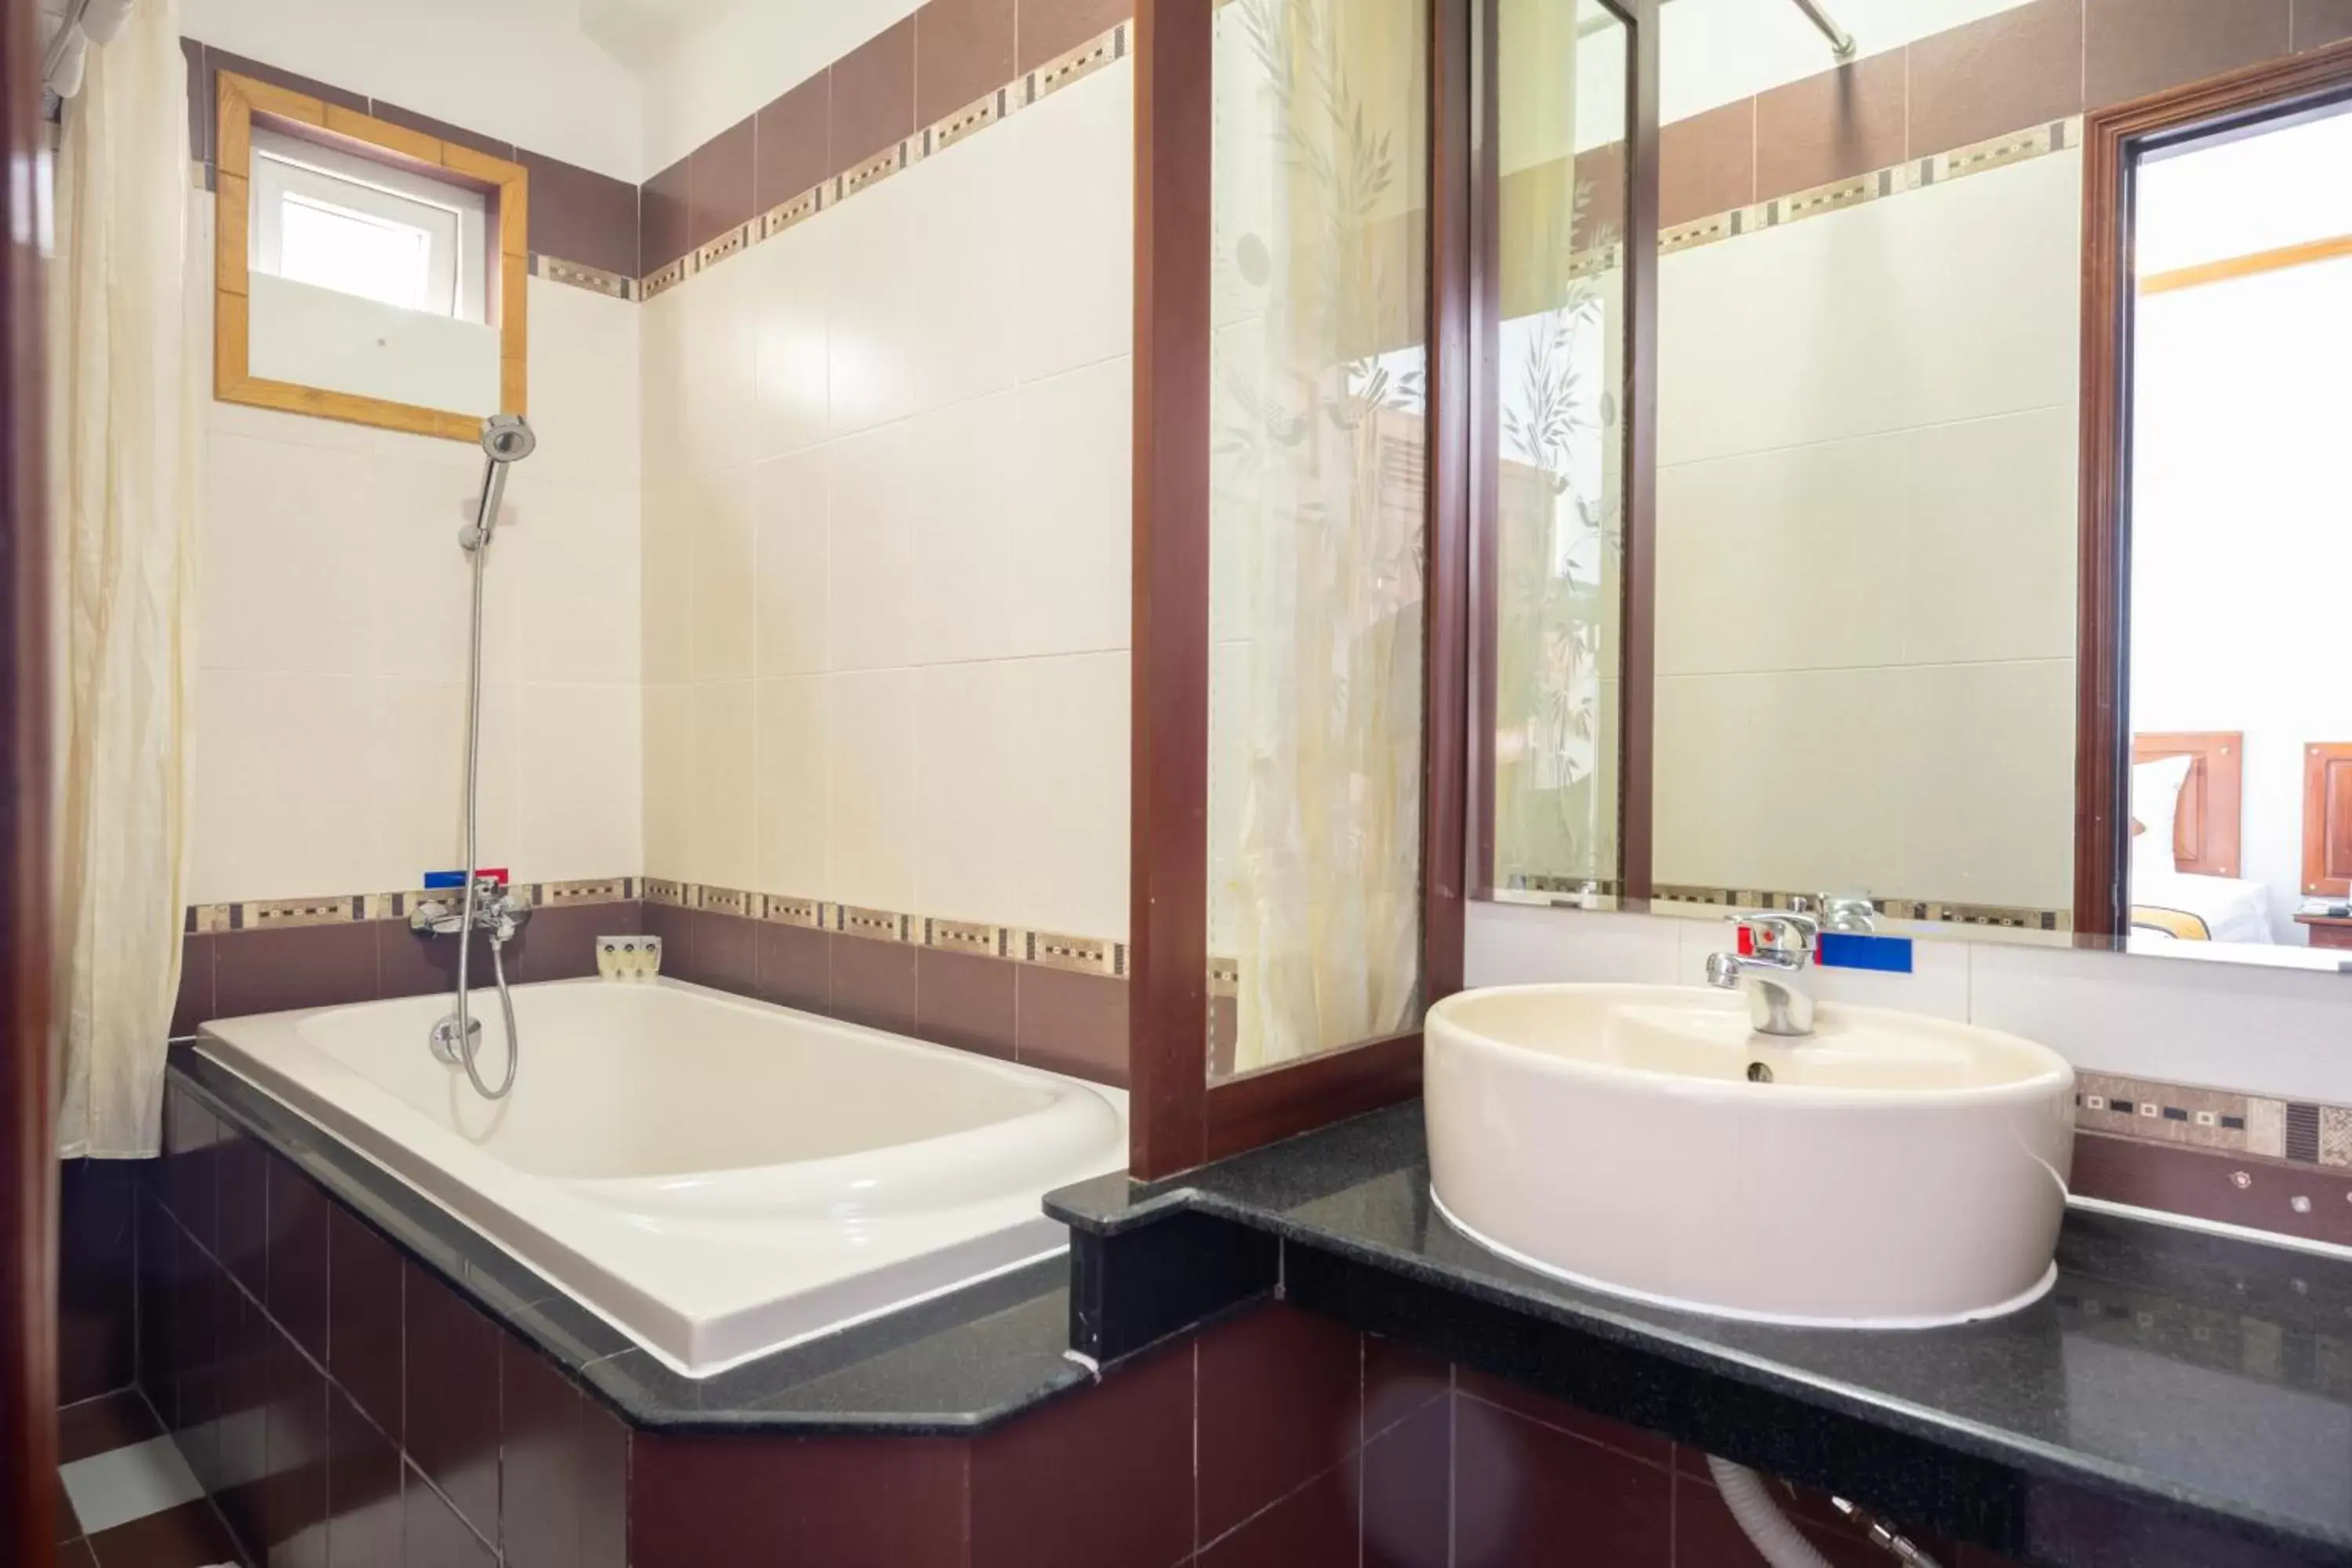 Bathroom in Duc Vuong Saigon Hotel - Bui Vien